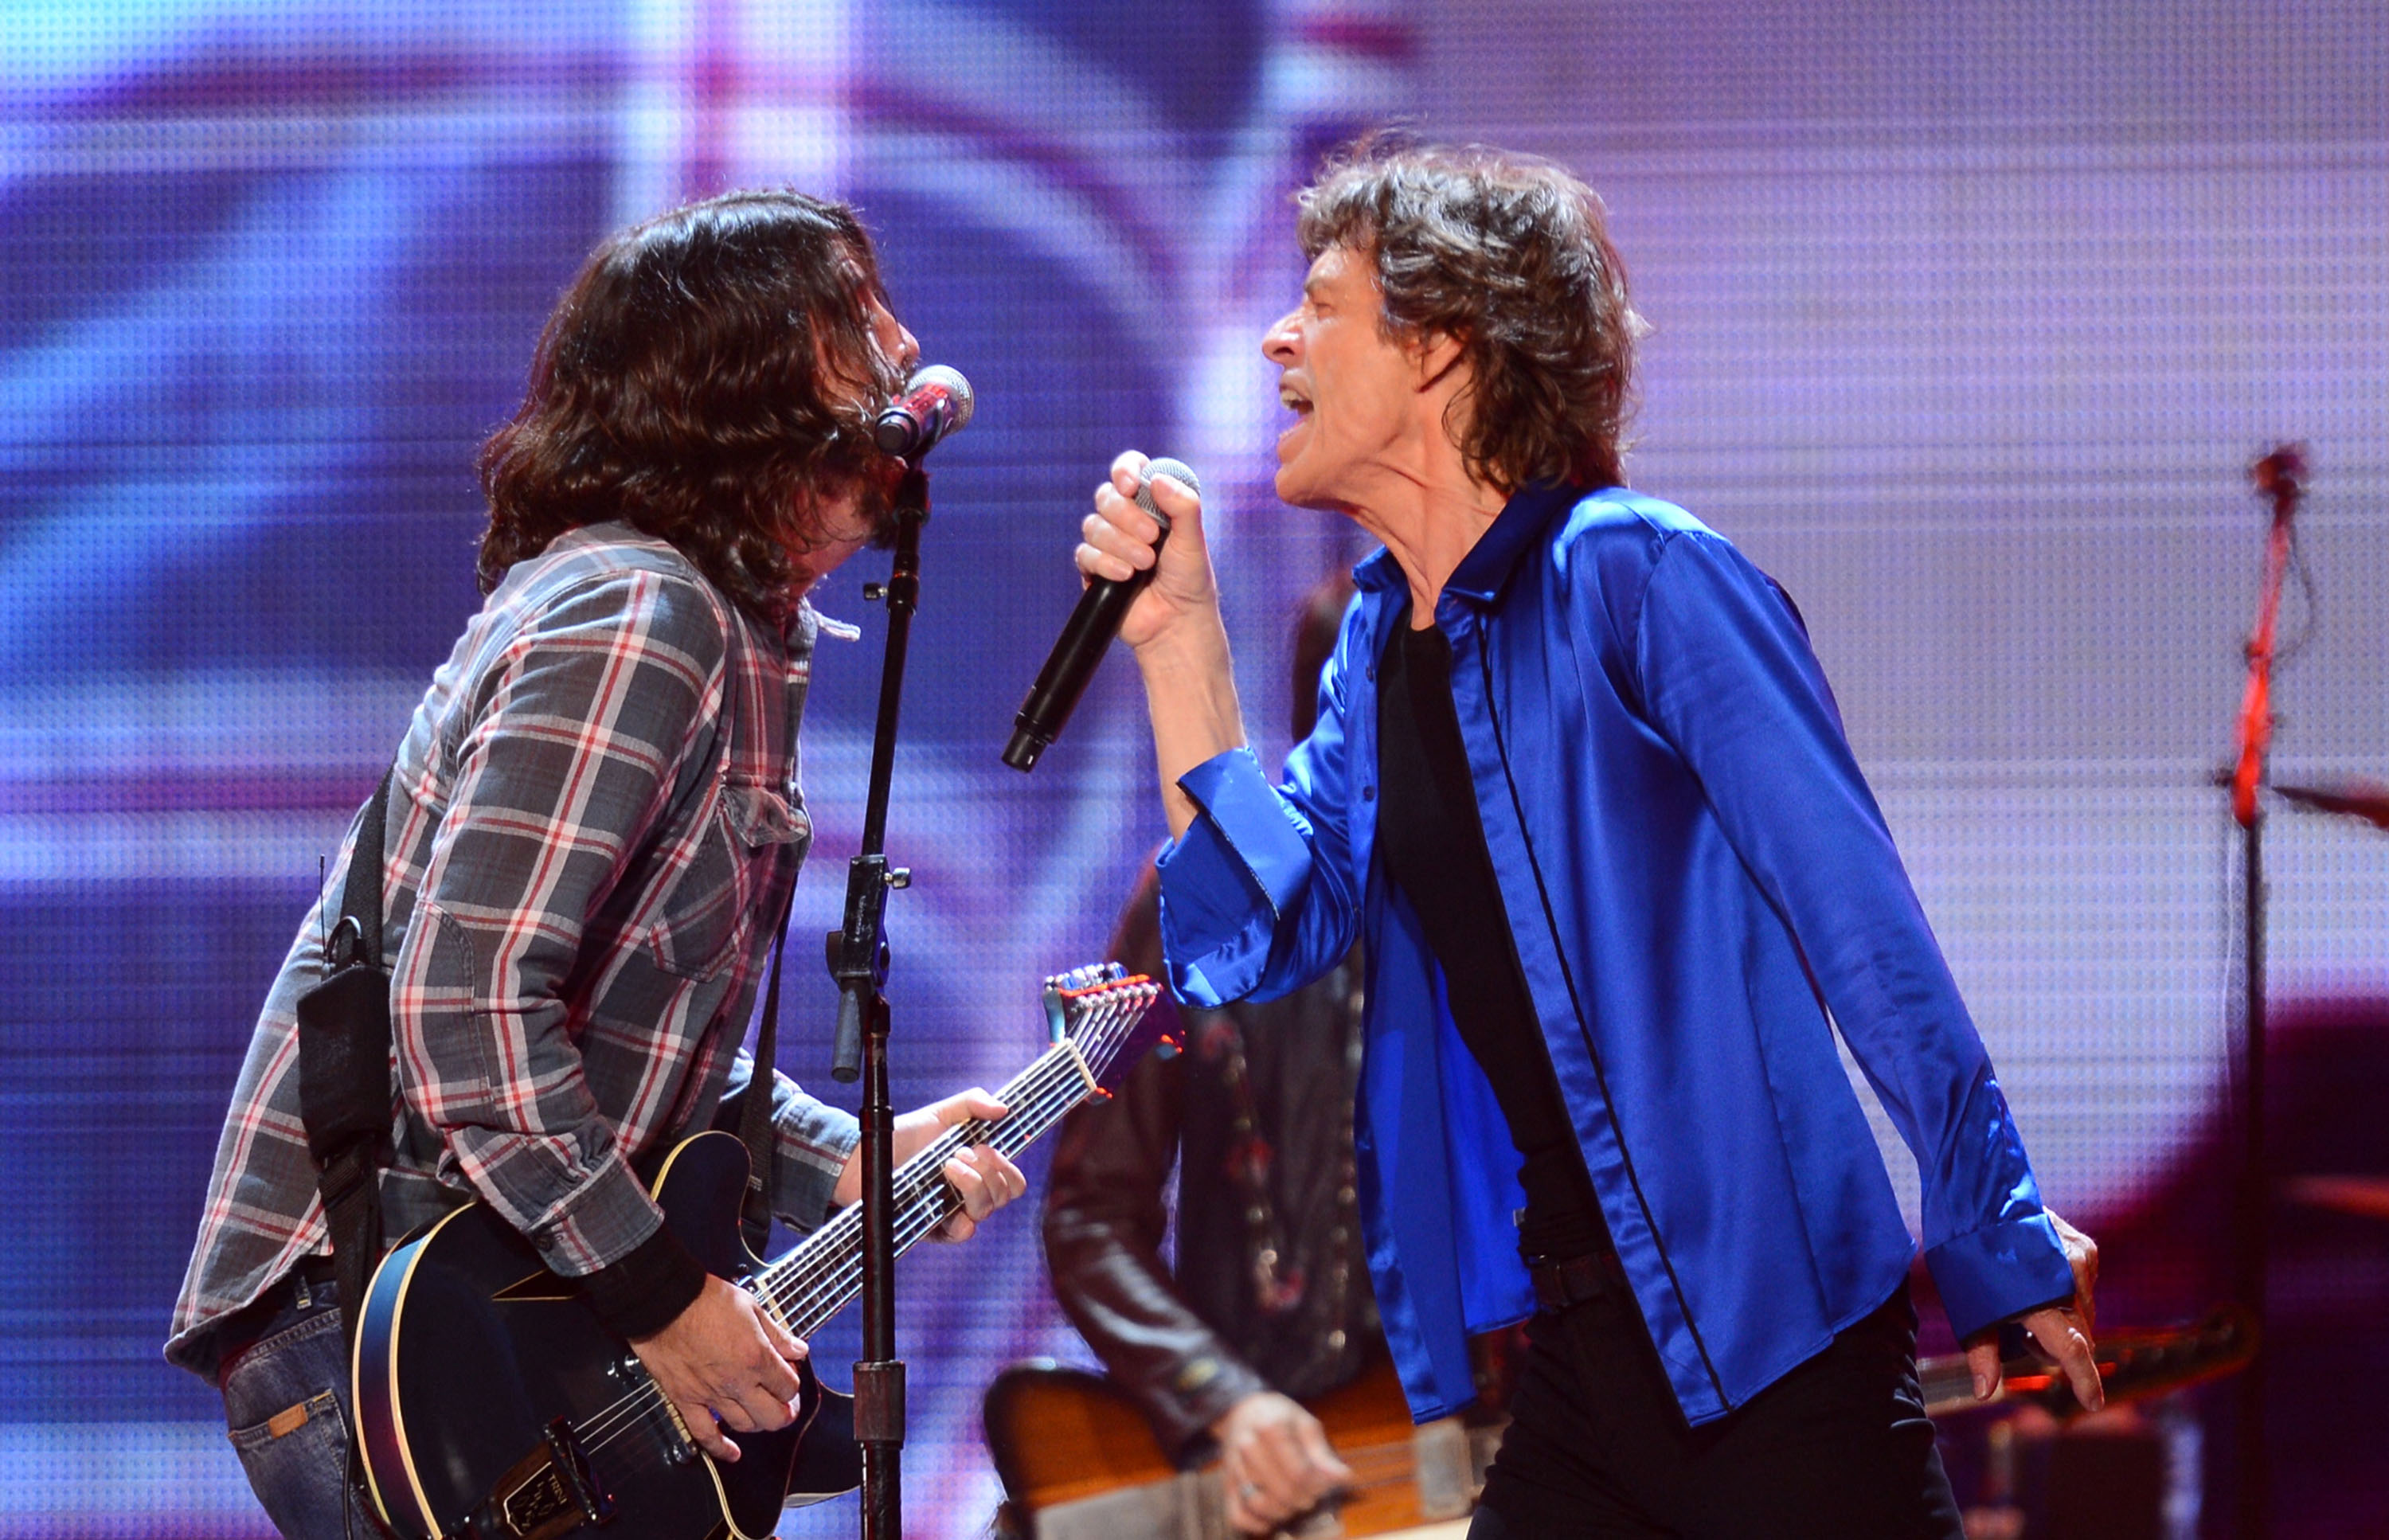 Mick Jaggernek a töke tele van a járvánnyal, csinált is róla egy számot Dave Grohllal